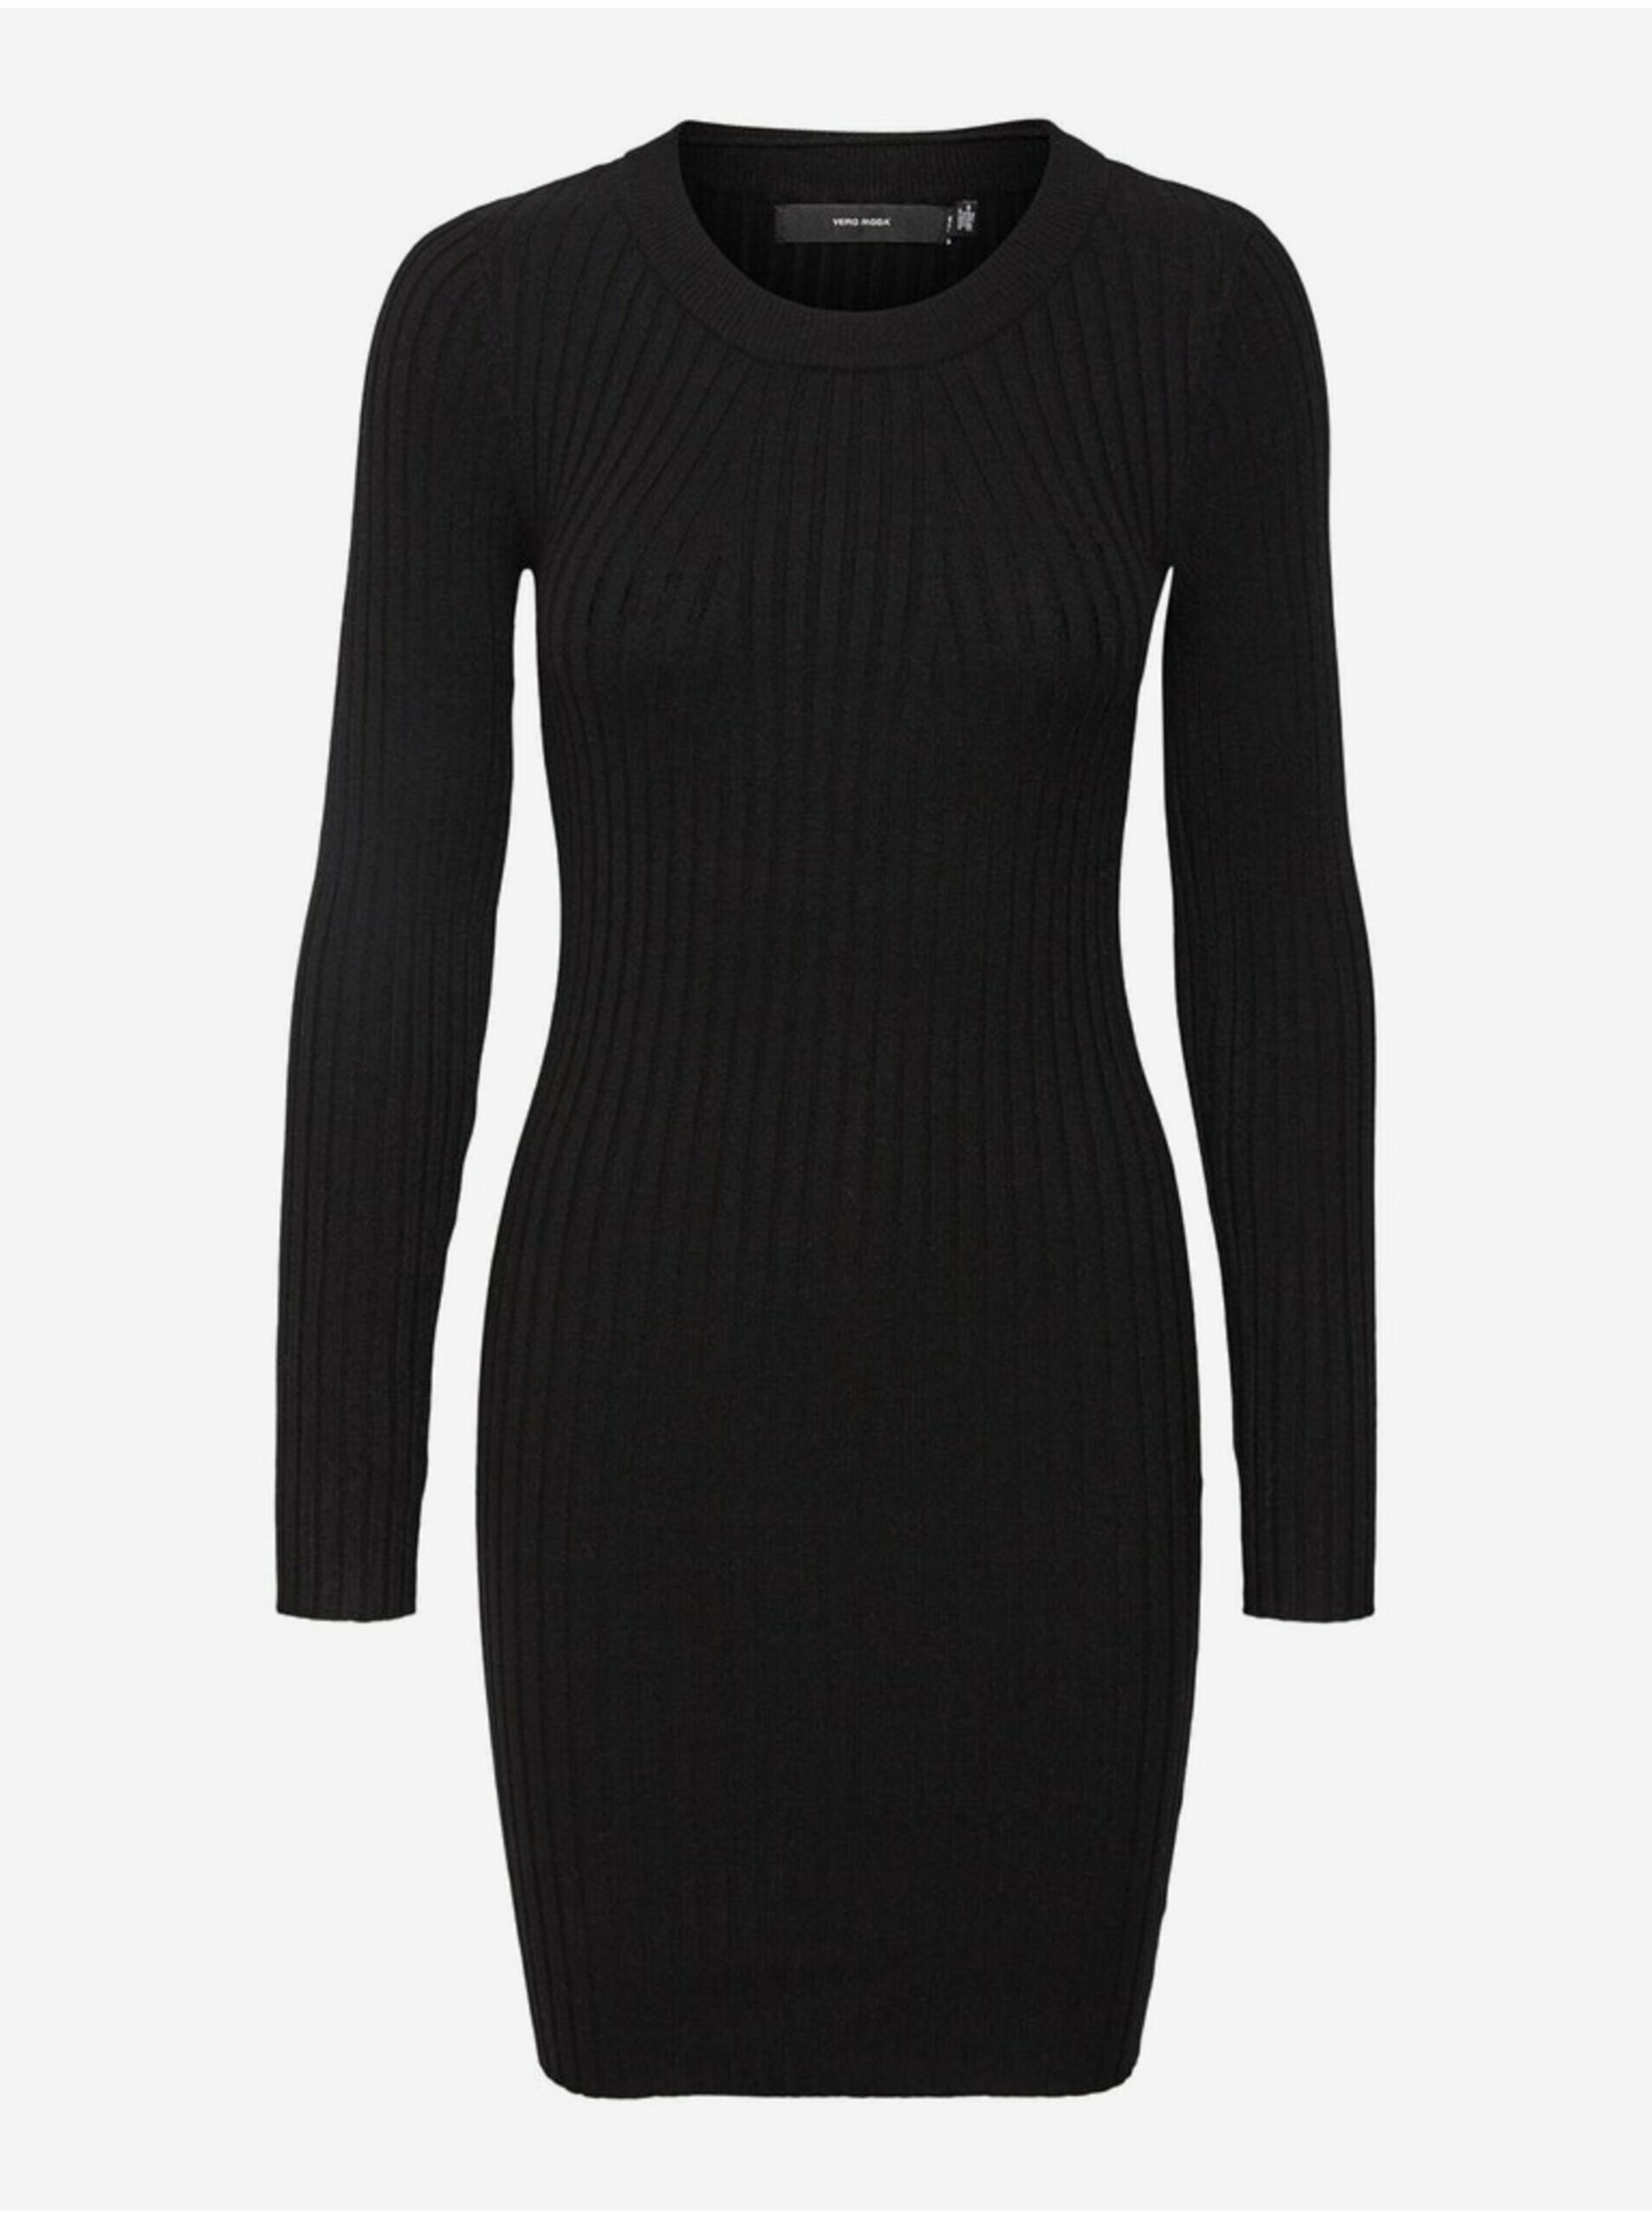 Čierne dámske svetrové rebrované šaty Vero Moda Kiki